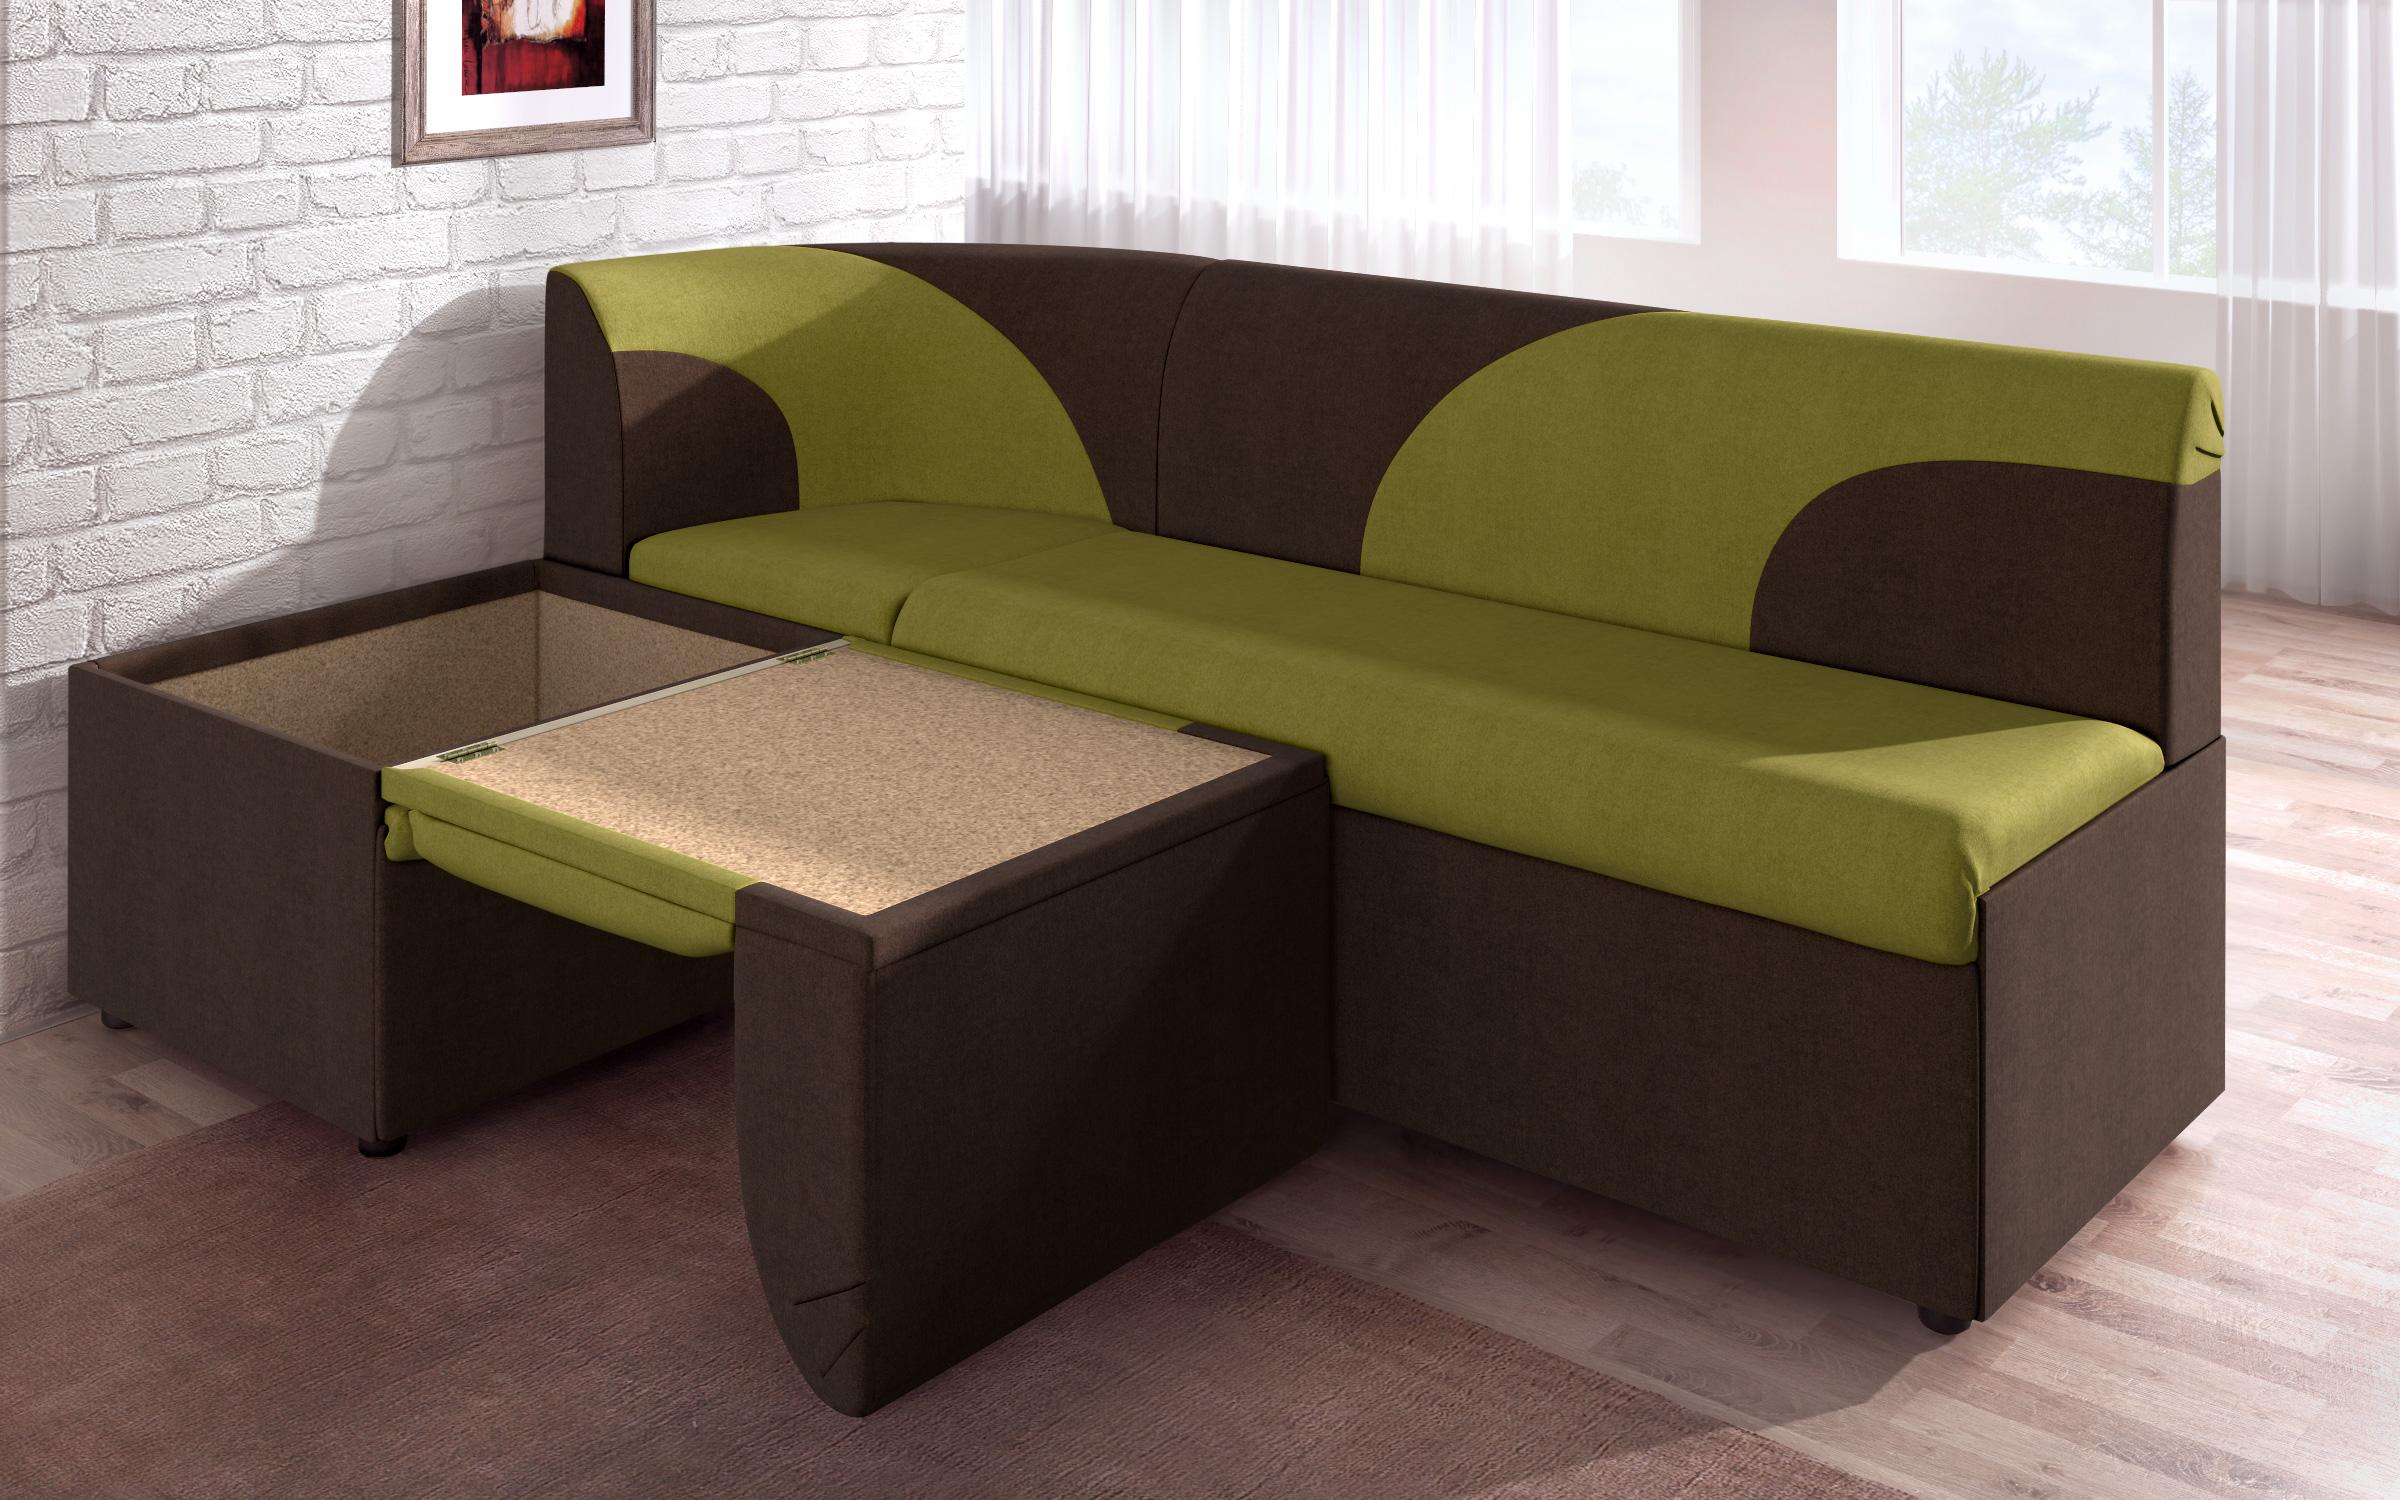 Γωνιακός καναπές κουζίνας  Ara mini, πράσινο + καφέ  4